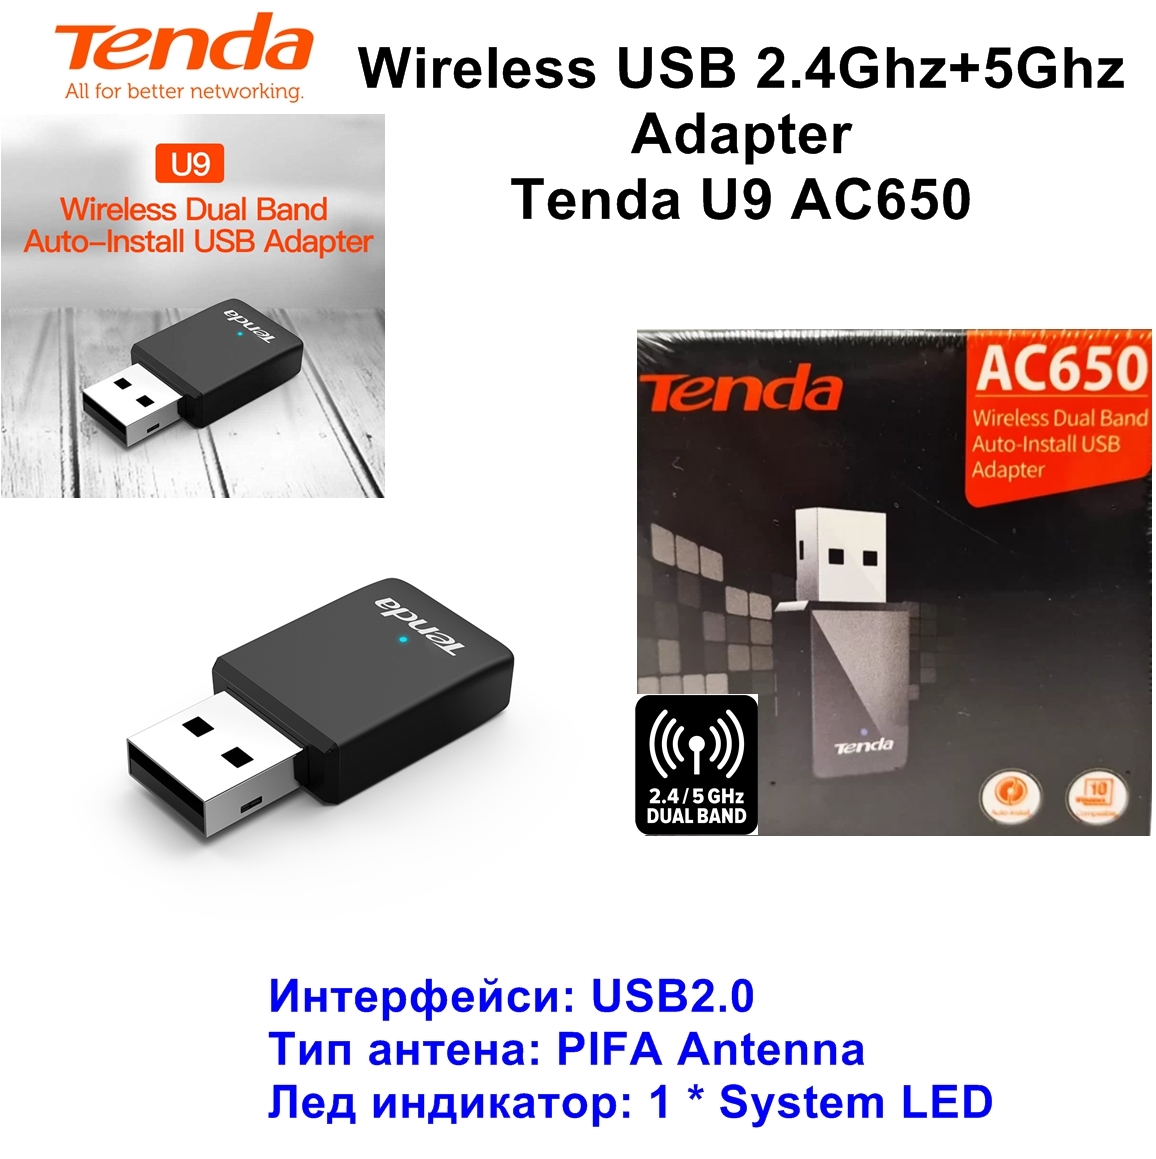 Wireless USB 2.4Ghz+5Ghz Adapter Tenda U9 AC650